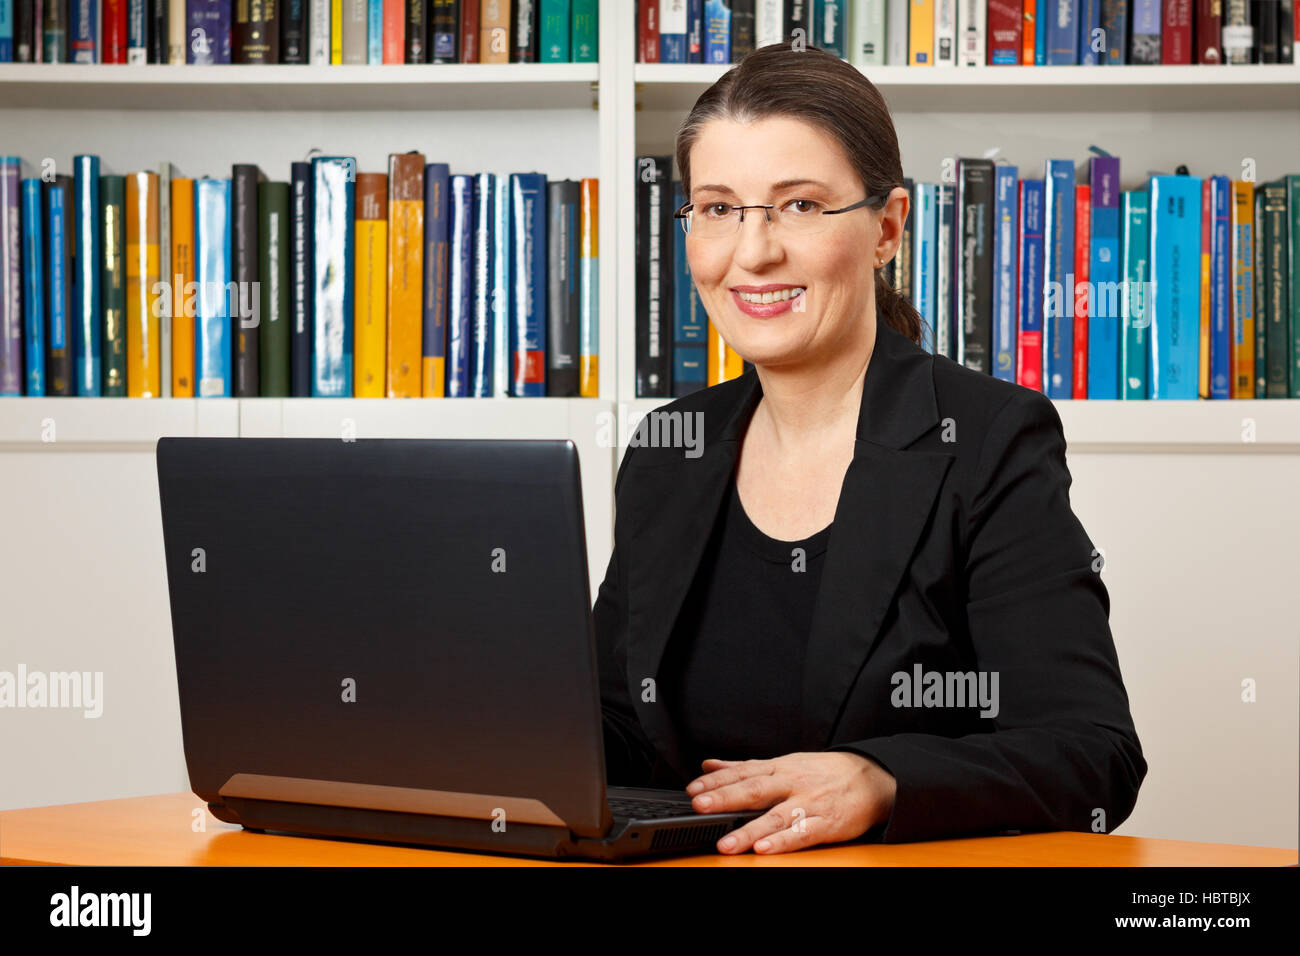 Gentile donna sorridente davanti al suo computer portatile in una libreria, insegnante, tutor, professore, consulenti, consulenza Foto Stock